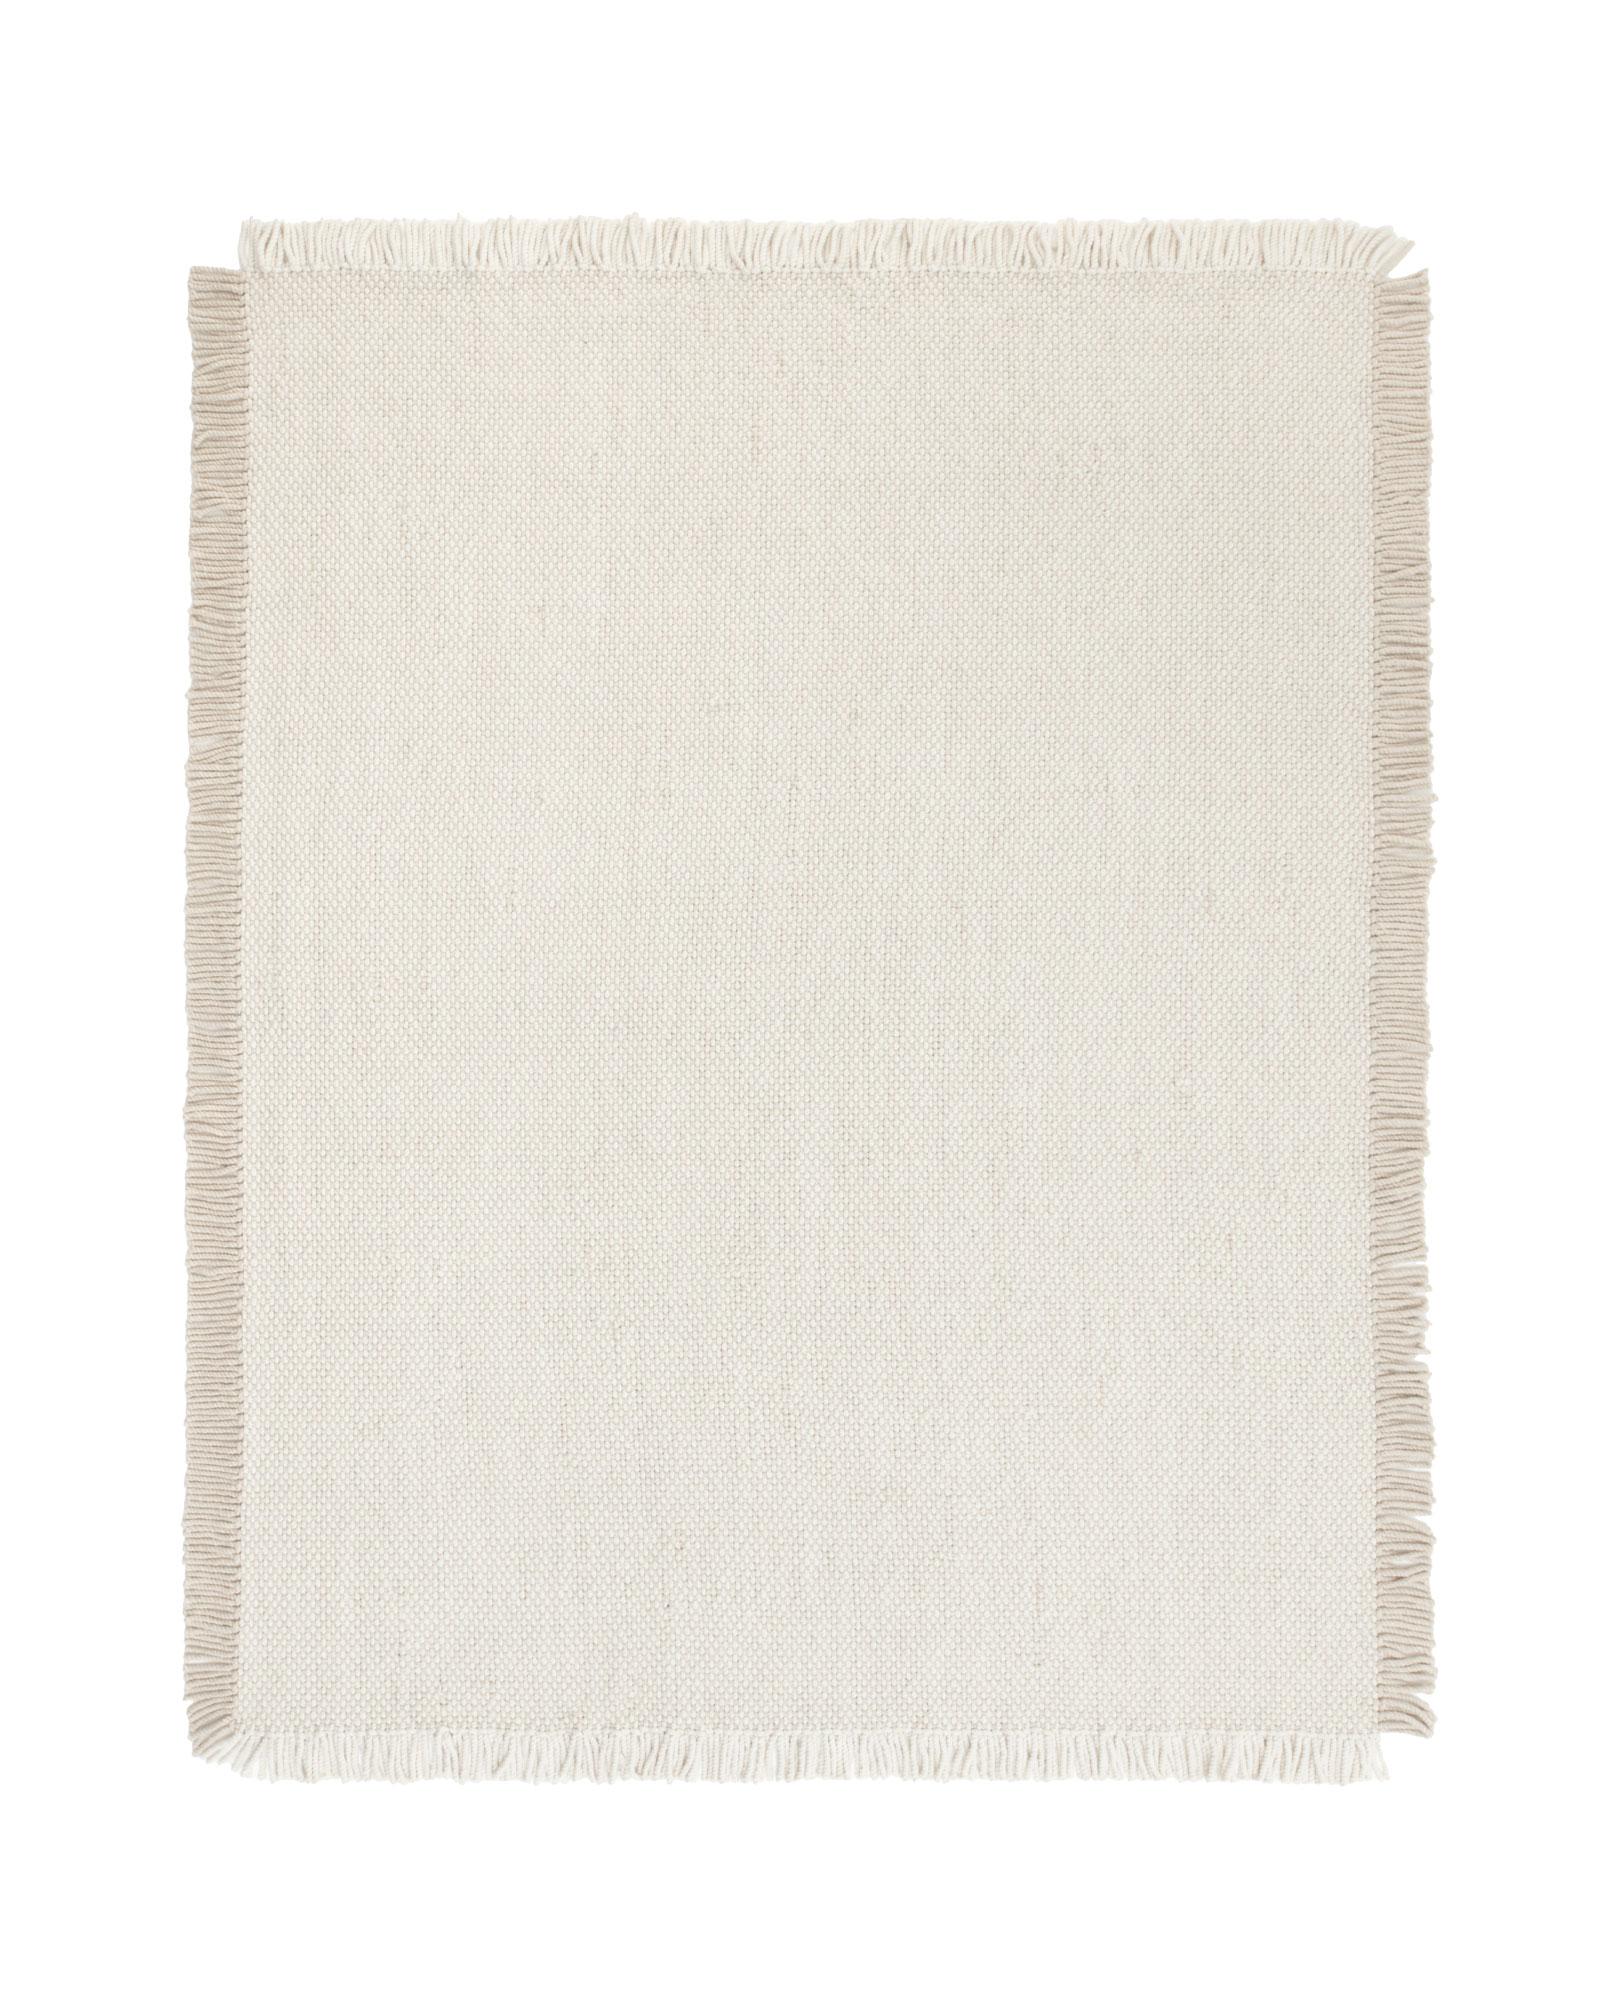 Night est un tapis produit par la marque CC-Tapis. Le tapis Night fait partie de la Collection S et est composé à 100 % de laine, ce qui lui confère un toucher doux.

Le tapis Night est disponible en deux couleurs et constitue une combinaison